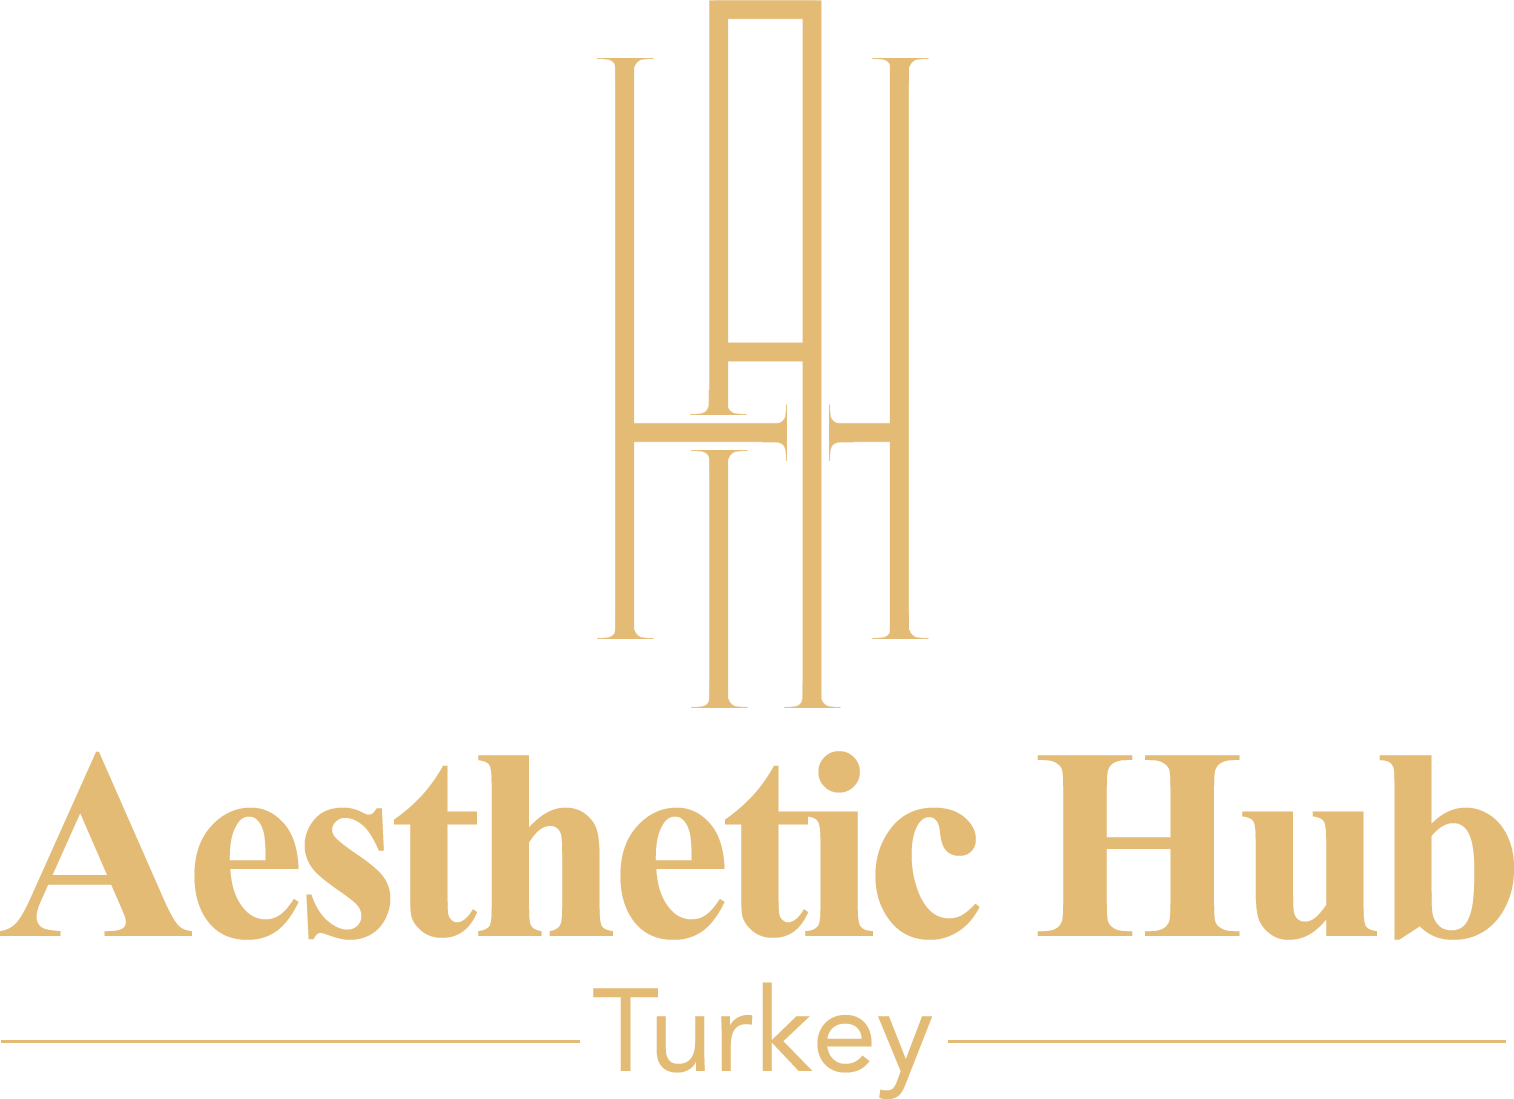 Aesthetic Hub Turkey